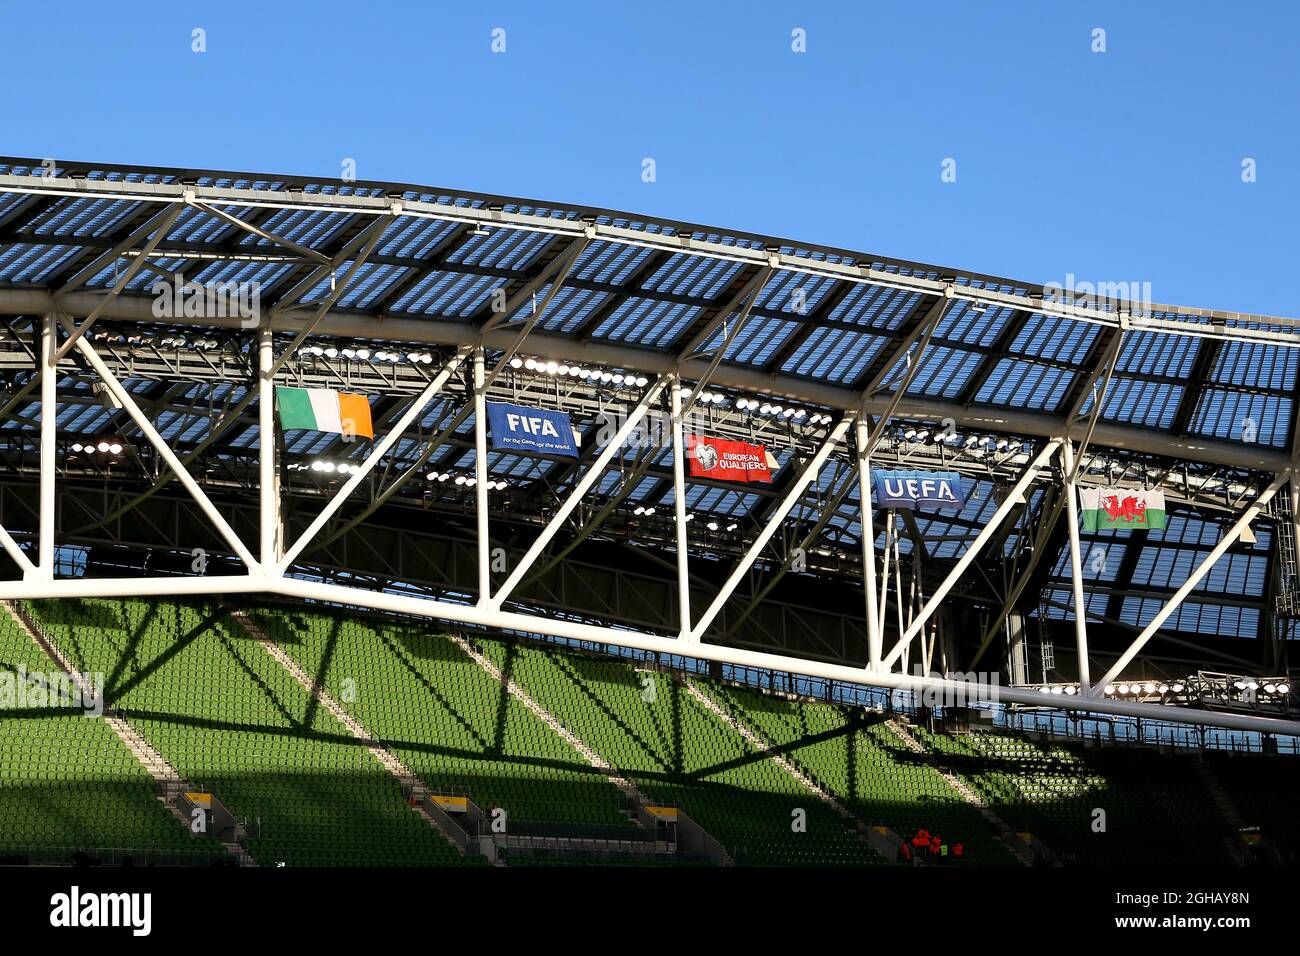 Flaggen hängen im Aviva Stadium, während die Sonne während der Gruppe D-WM-Qualifikation im Aviva Stadium, Dublin untergeht. Bilddatum: 24. März 2017. Bildnachweis sollte lauten: Matt McNulty/Sportimage via PA Images Stockfoto